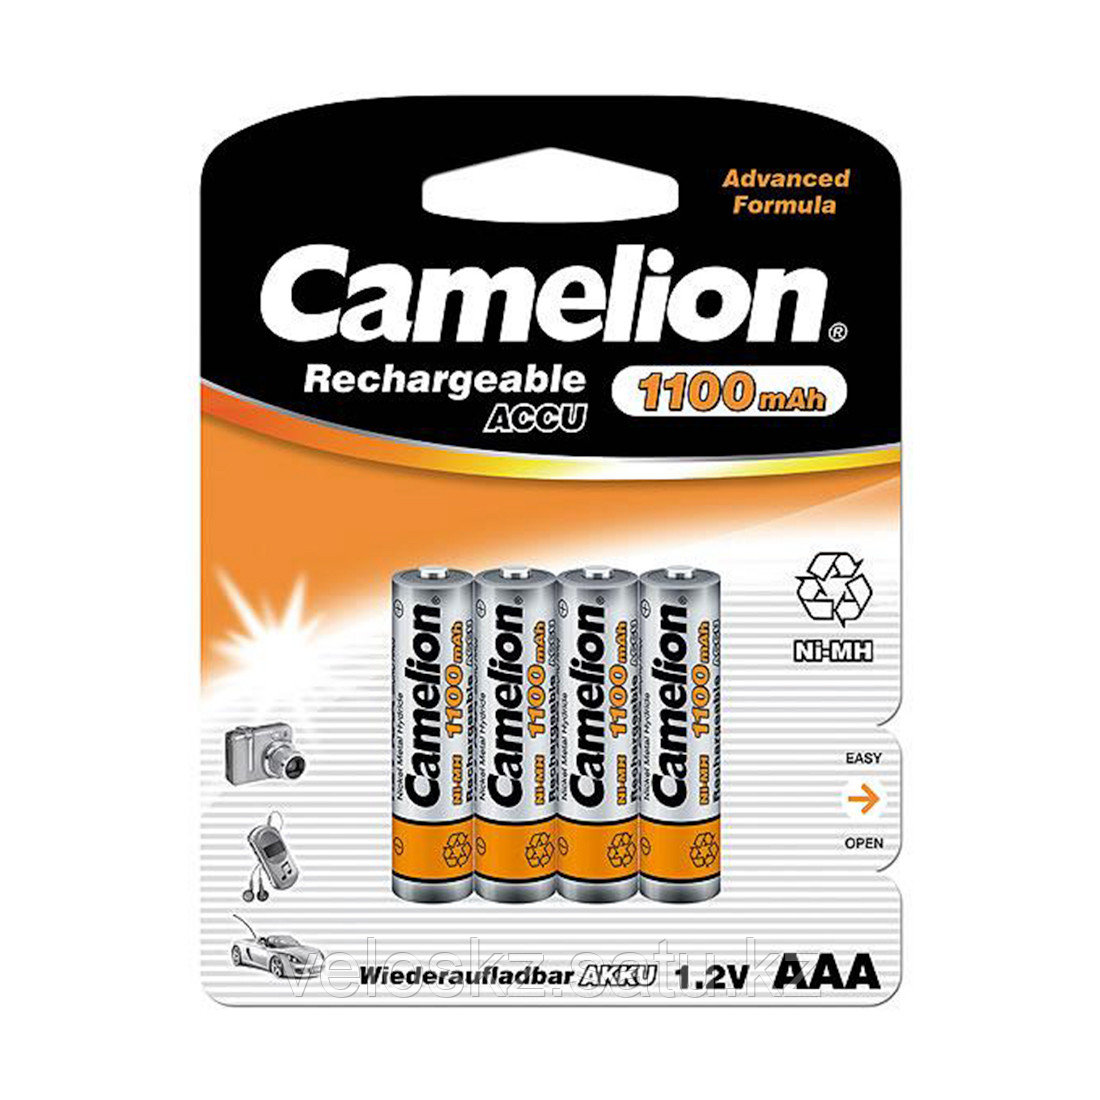 Camelion Аккумулятор AAA CAMELION NH-AAA1100BP4, Lockbox Rechargeable, 1.2V, 1100 mAh, 4 шт. в блистер